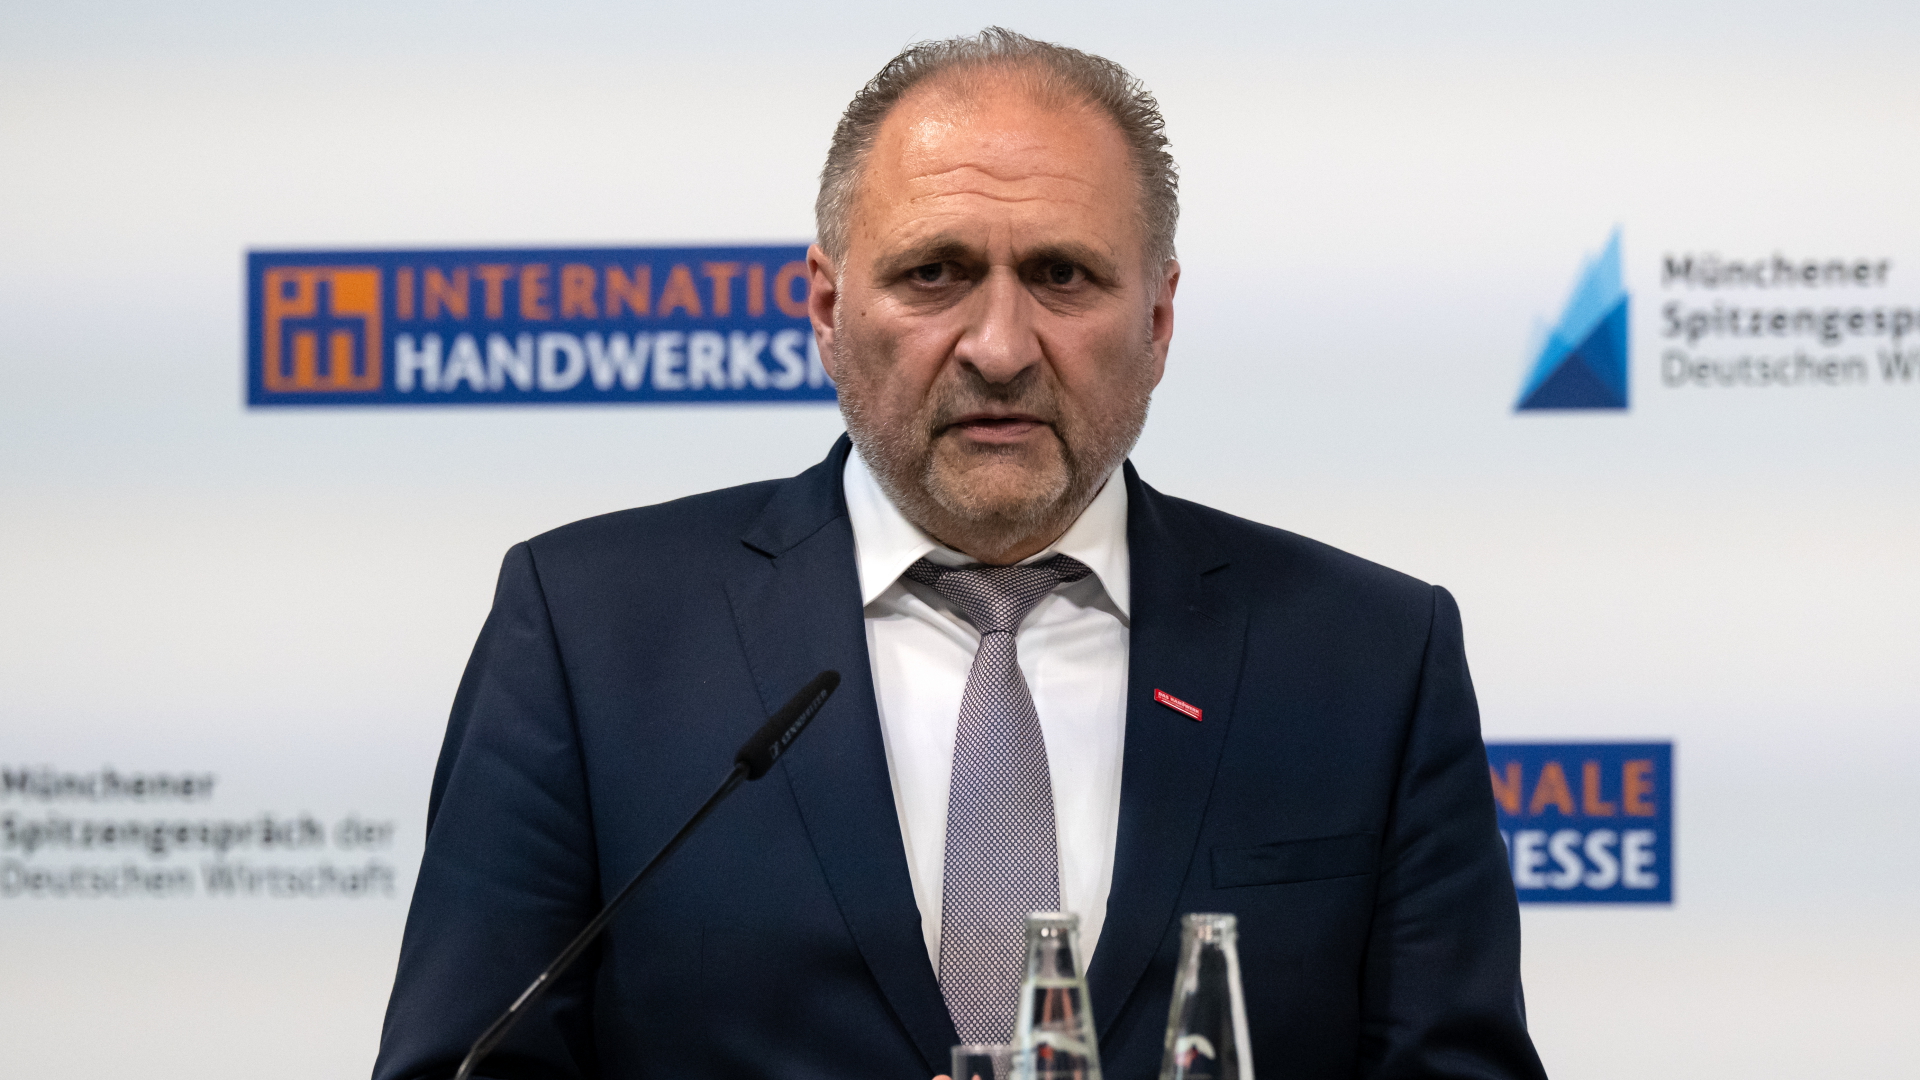 Handwerkspräsident übt Kritik an "Ausländerabwehrbehörden"